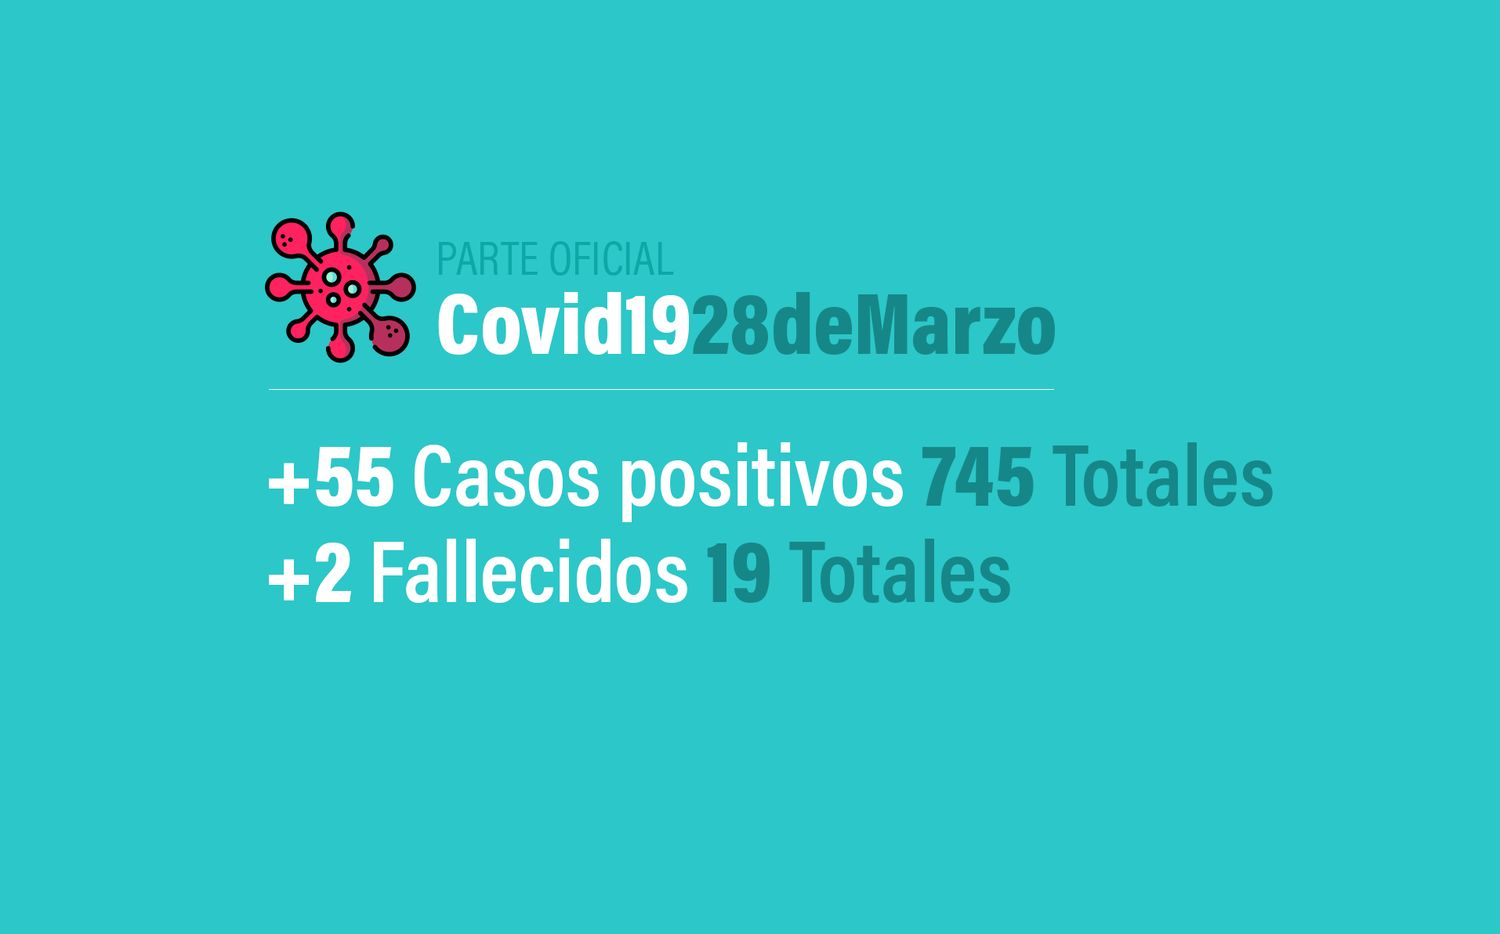 Coronavirus: 55 nuevos casos, trepa a 745 positivos en Argentina y 19 muertos al 28 de marzo